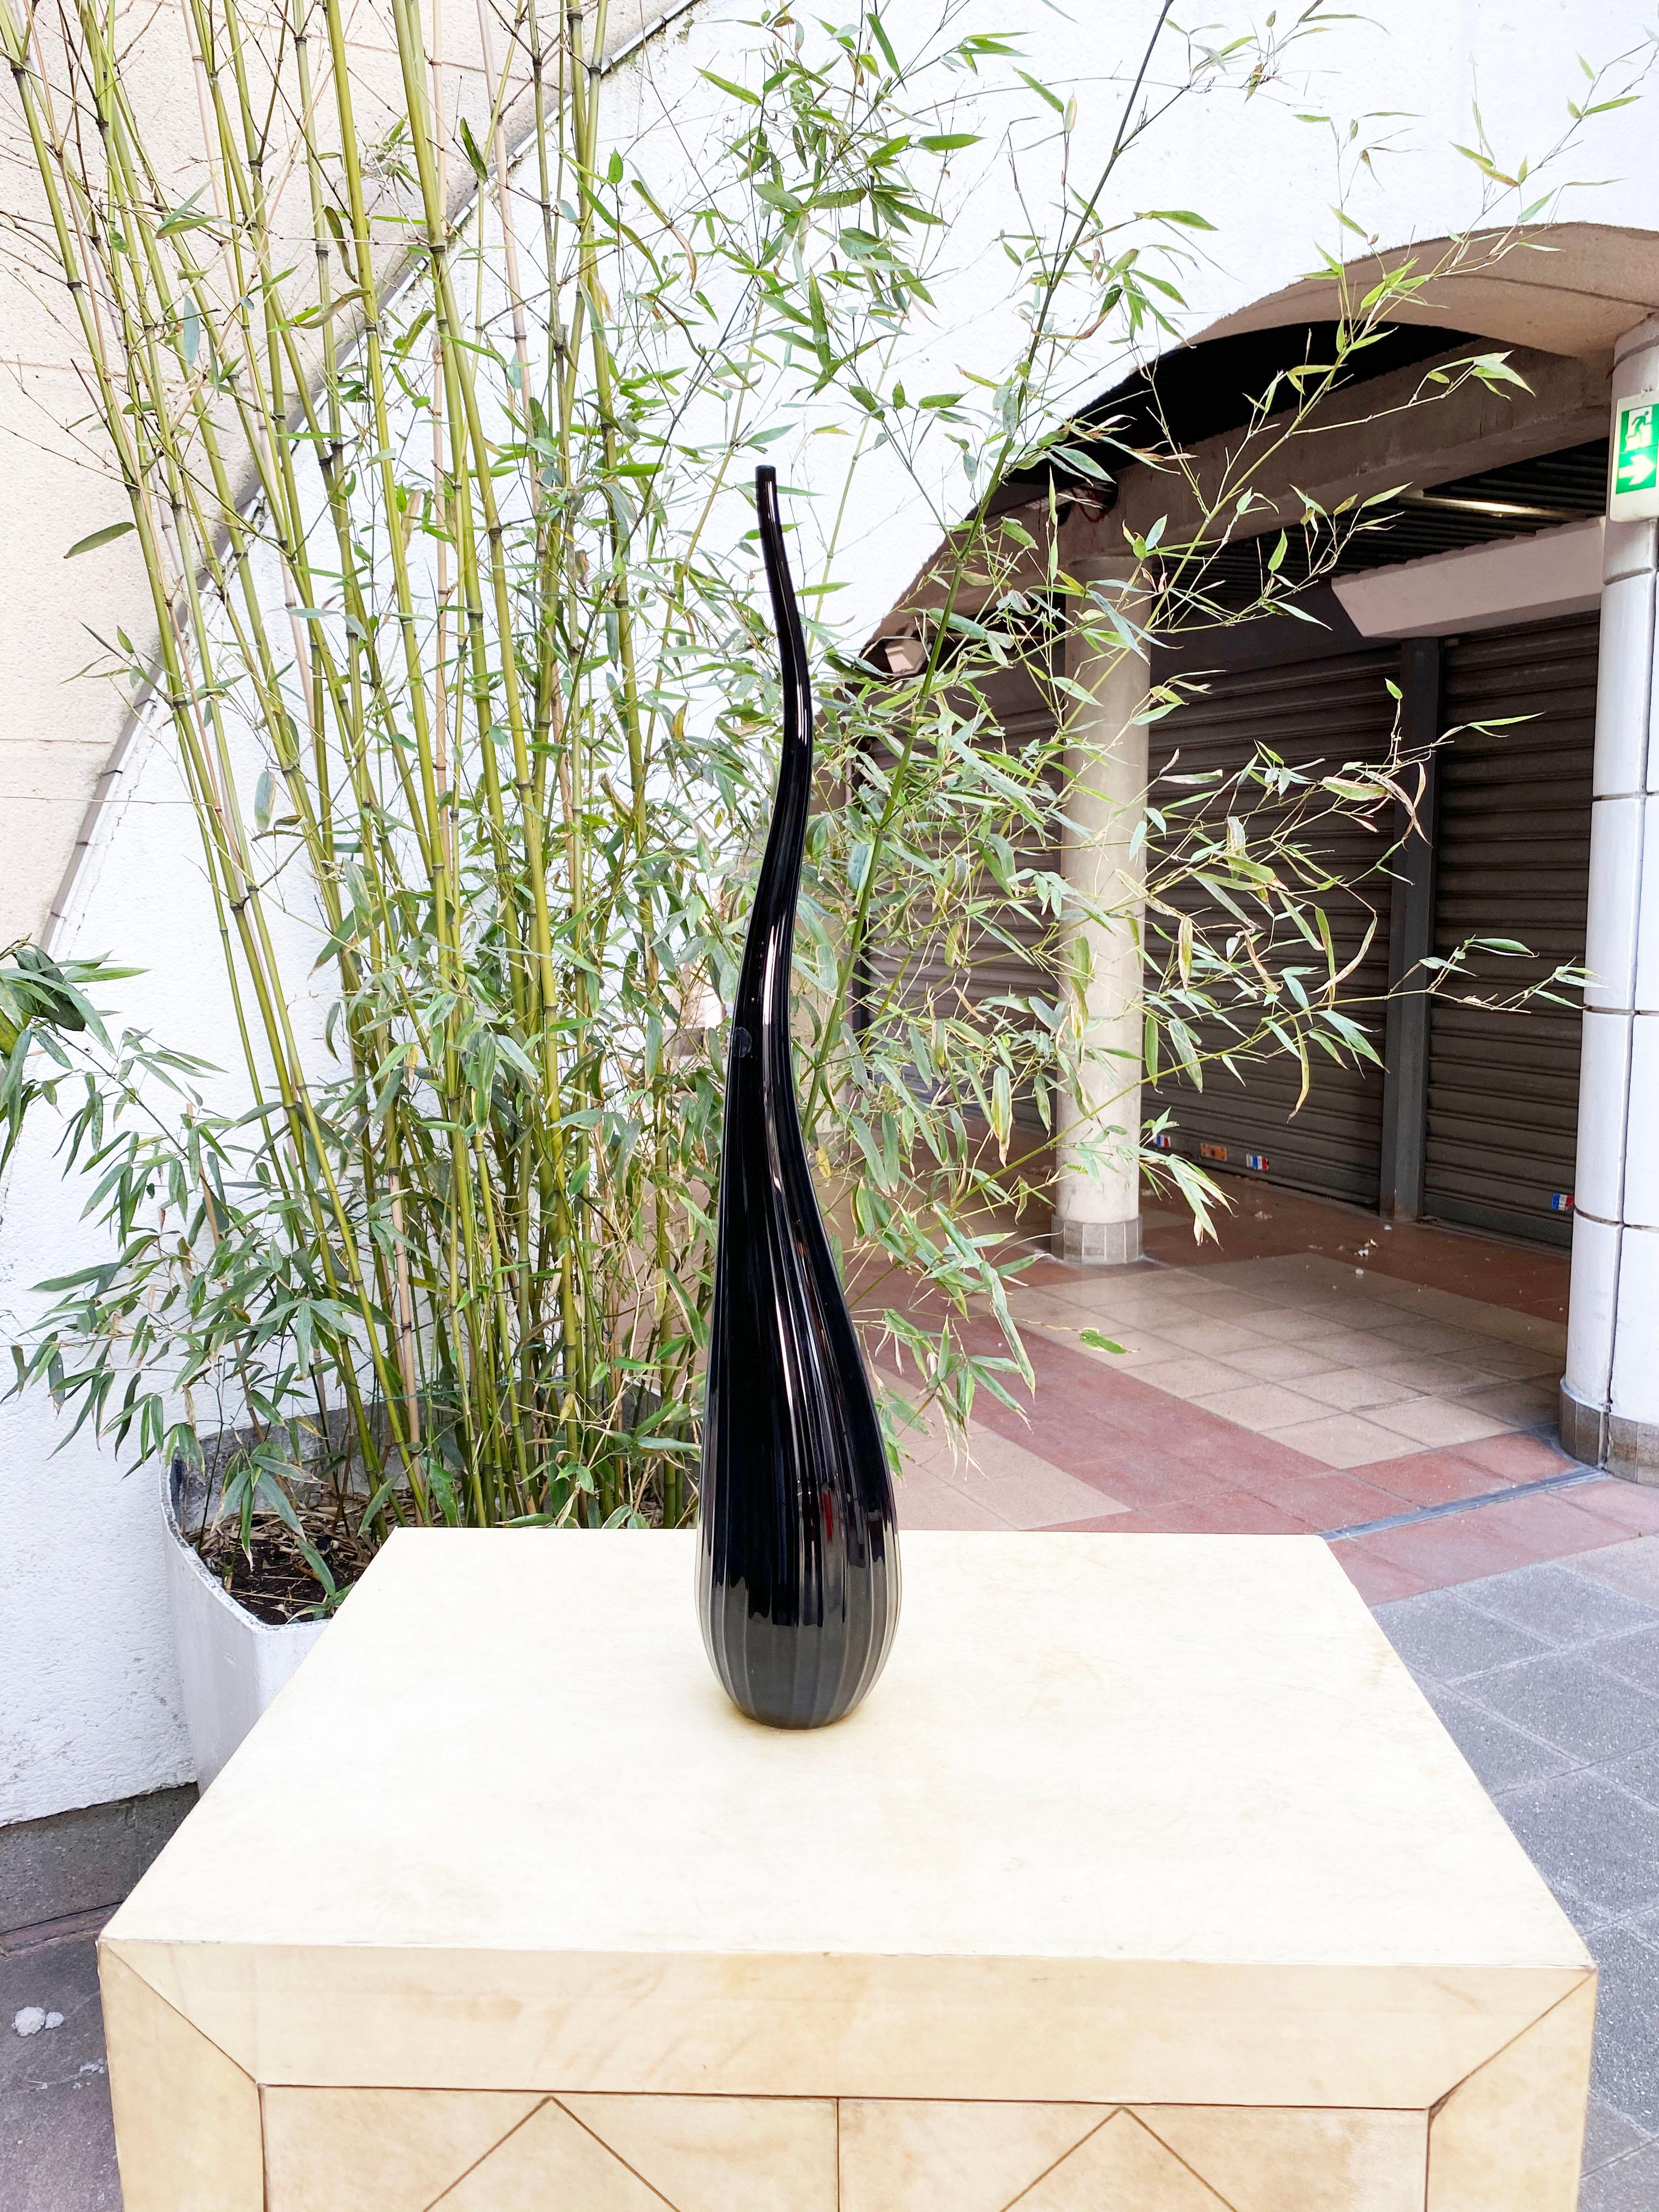 Salviati Murano
par Renzo Stellon
Modèle Aria
1 vase soliflore modèle Aria
en verre Murano noir
de forme piriforme avec un long col turbulent orné de fines nervures
signé et daté 2009
1 de 55cms de haut
neuf en stock avec son